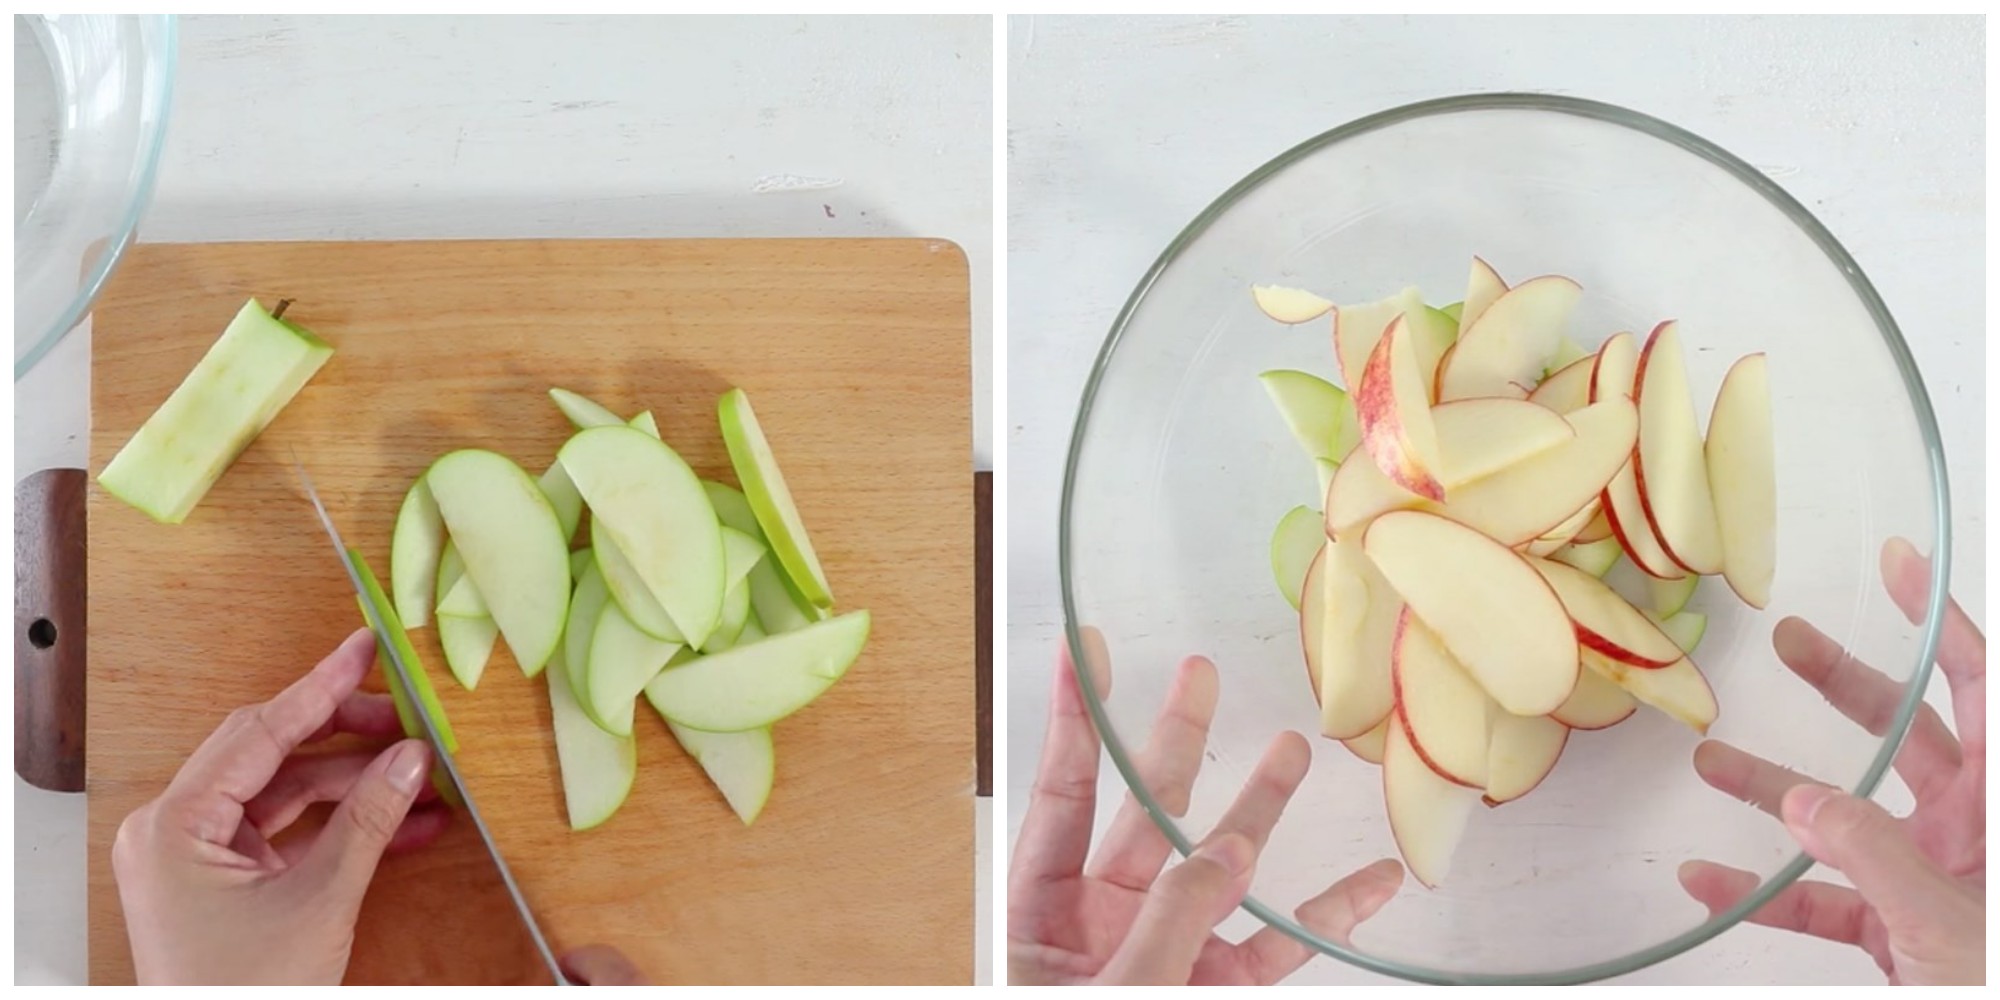 Rữa táo sạch sẽ, gọt táo và cắt thành từng phần